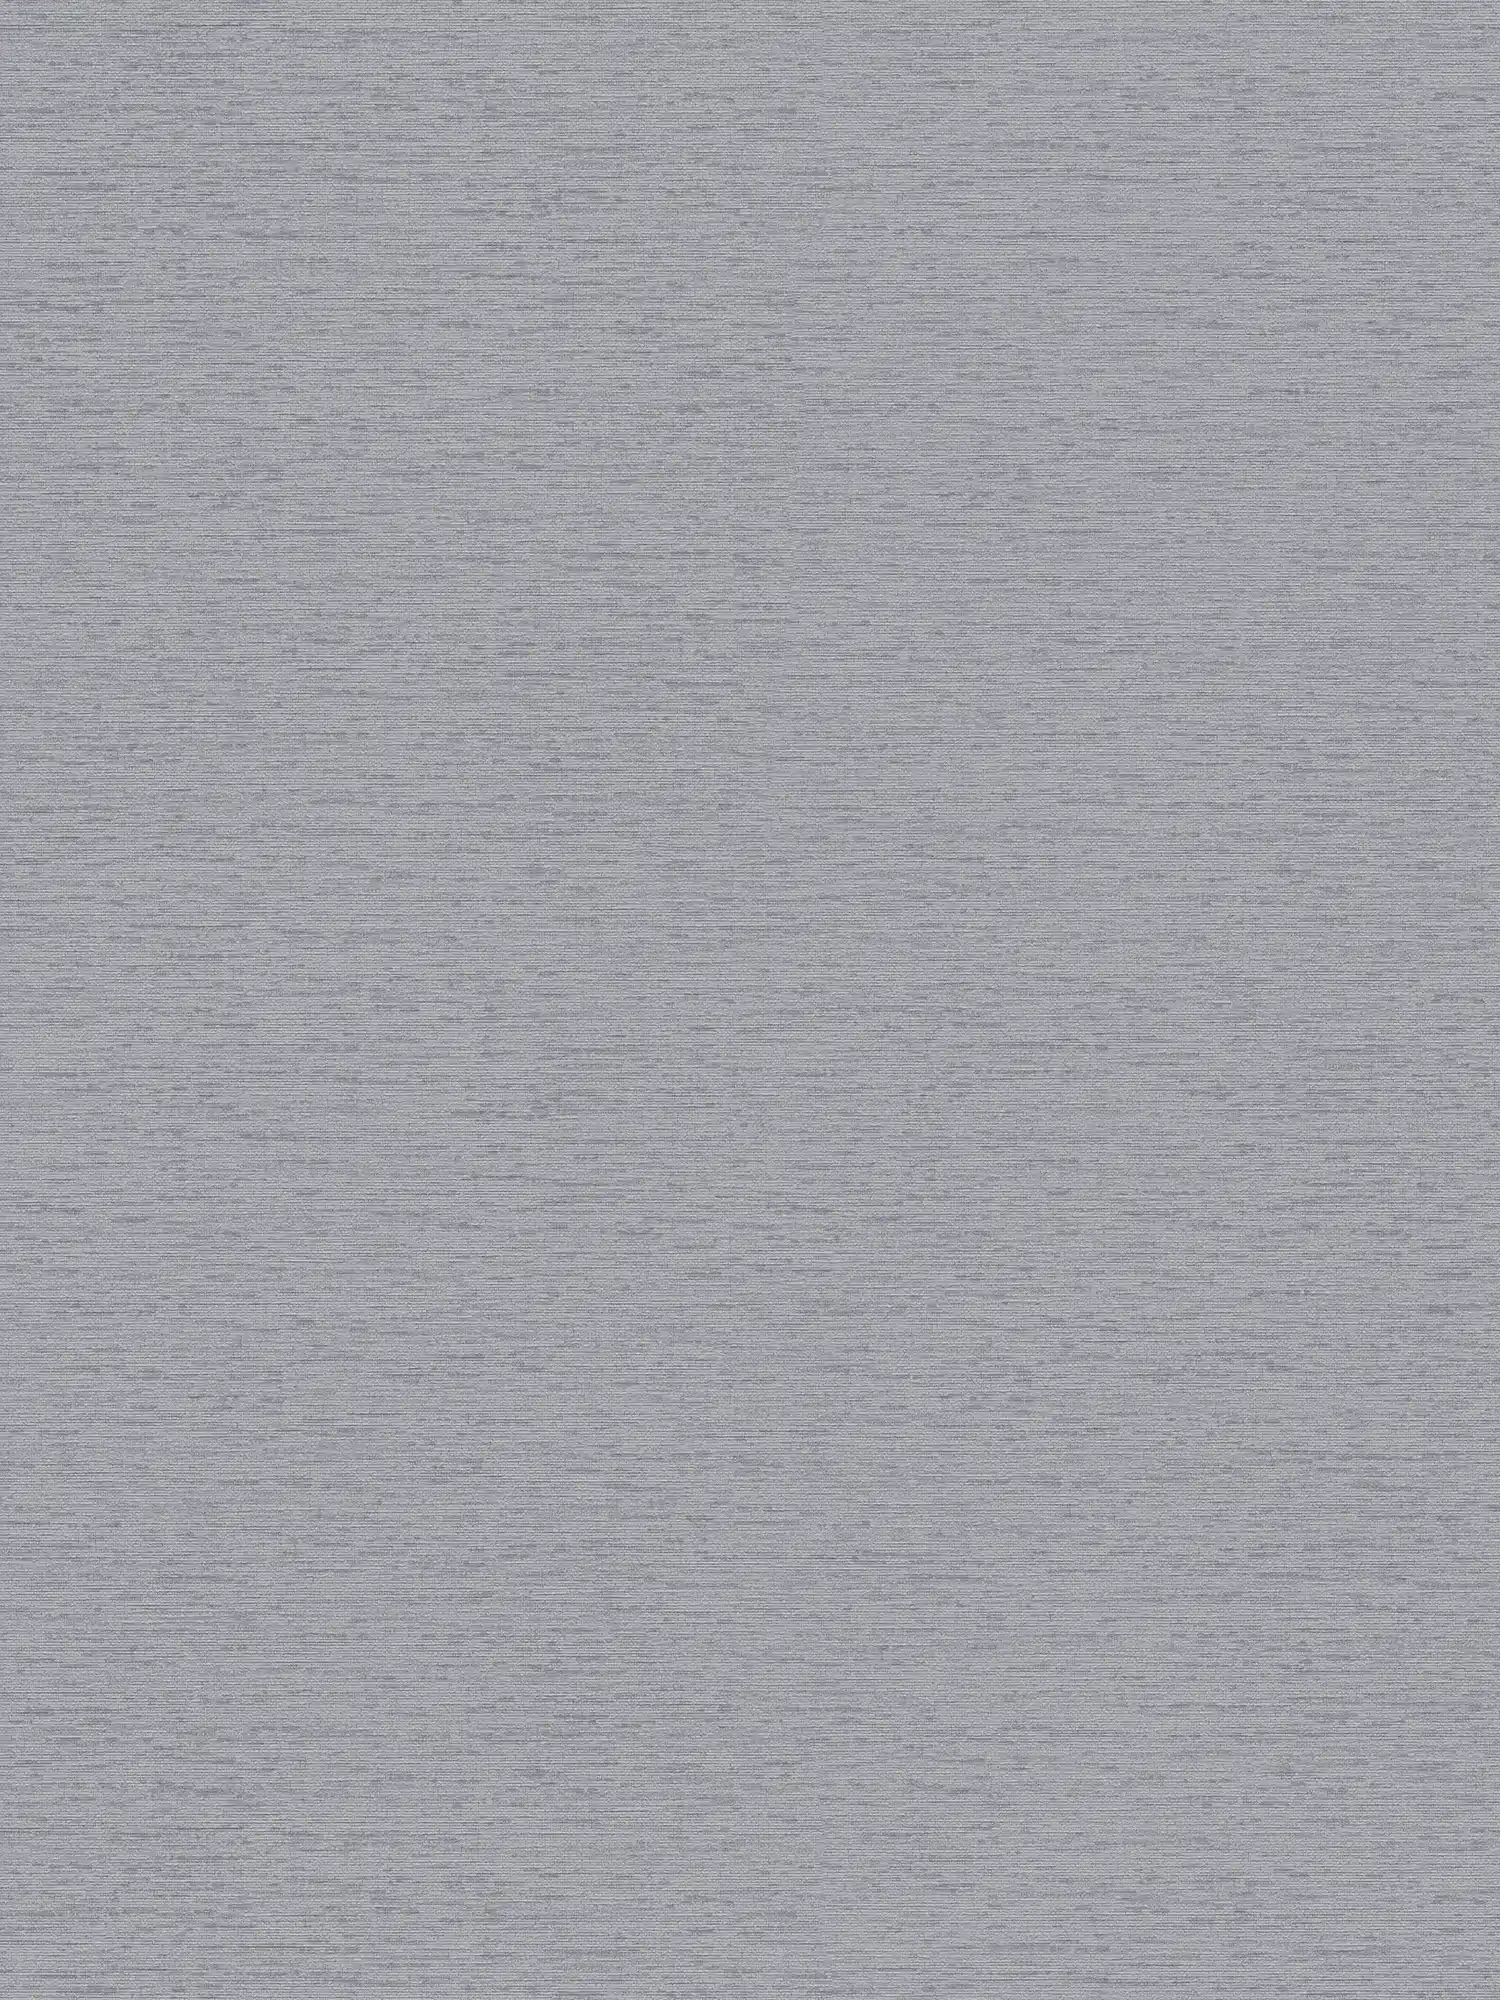 Wallpaper plain in fabric structure, matt - grey
